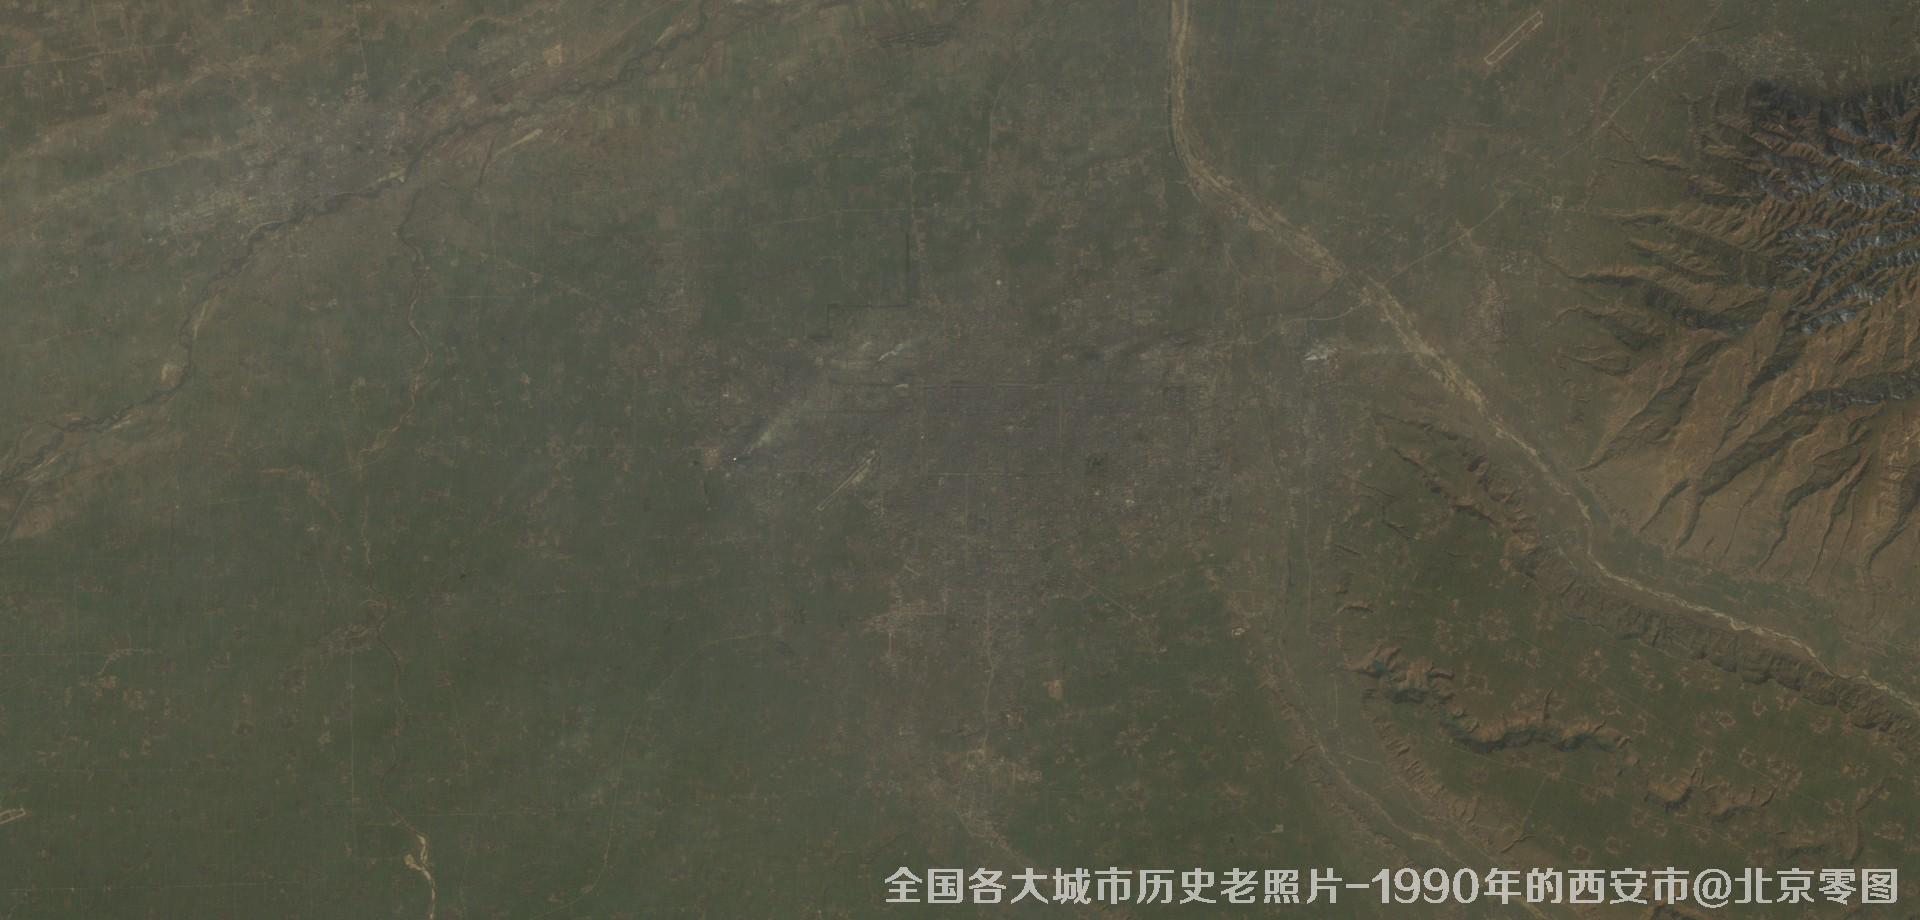 美国Landsat卫星拍摄的1990年的陕西省西安市历史卫星影像图